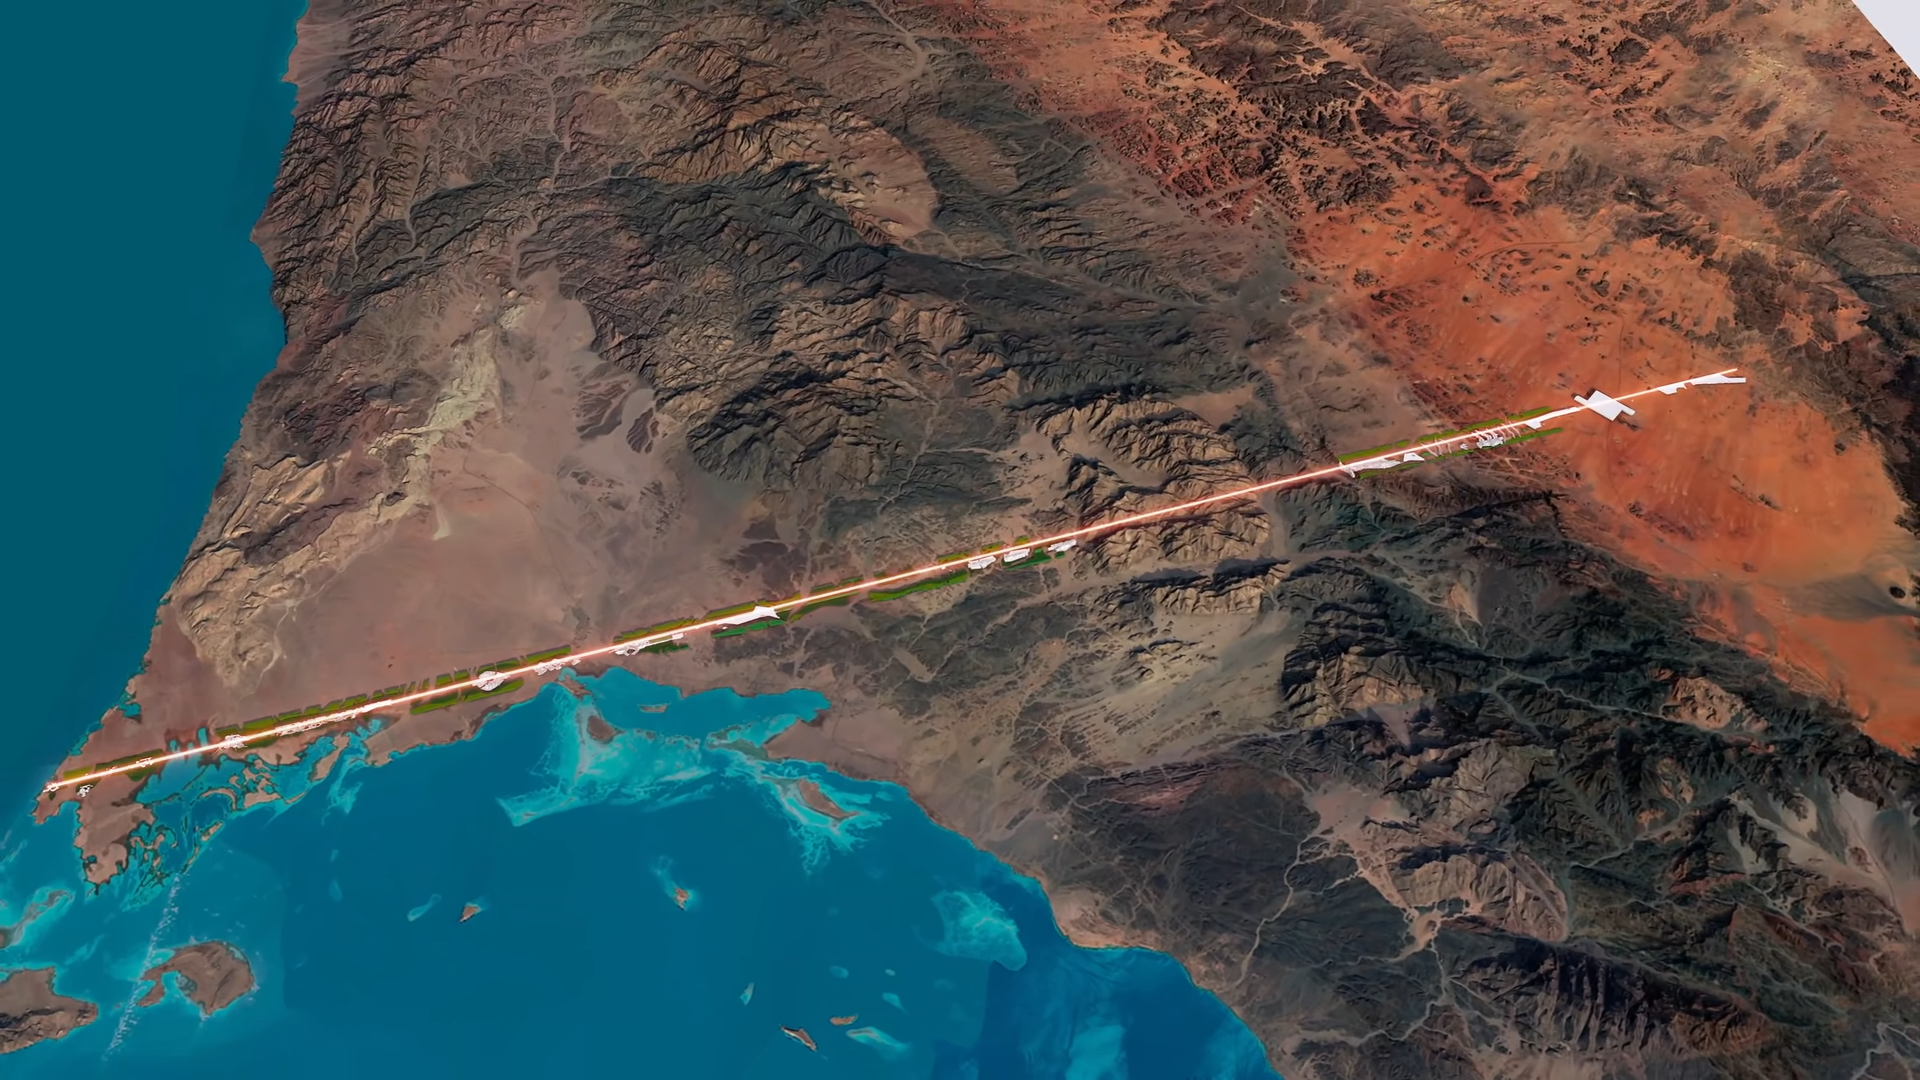 The Line vai cruzar os desertos da Arábia Saudita, até o Mar Vermelho